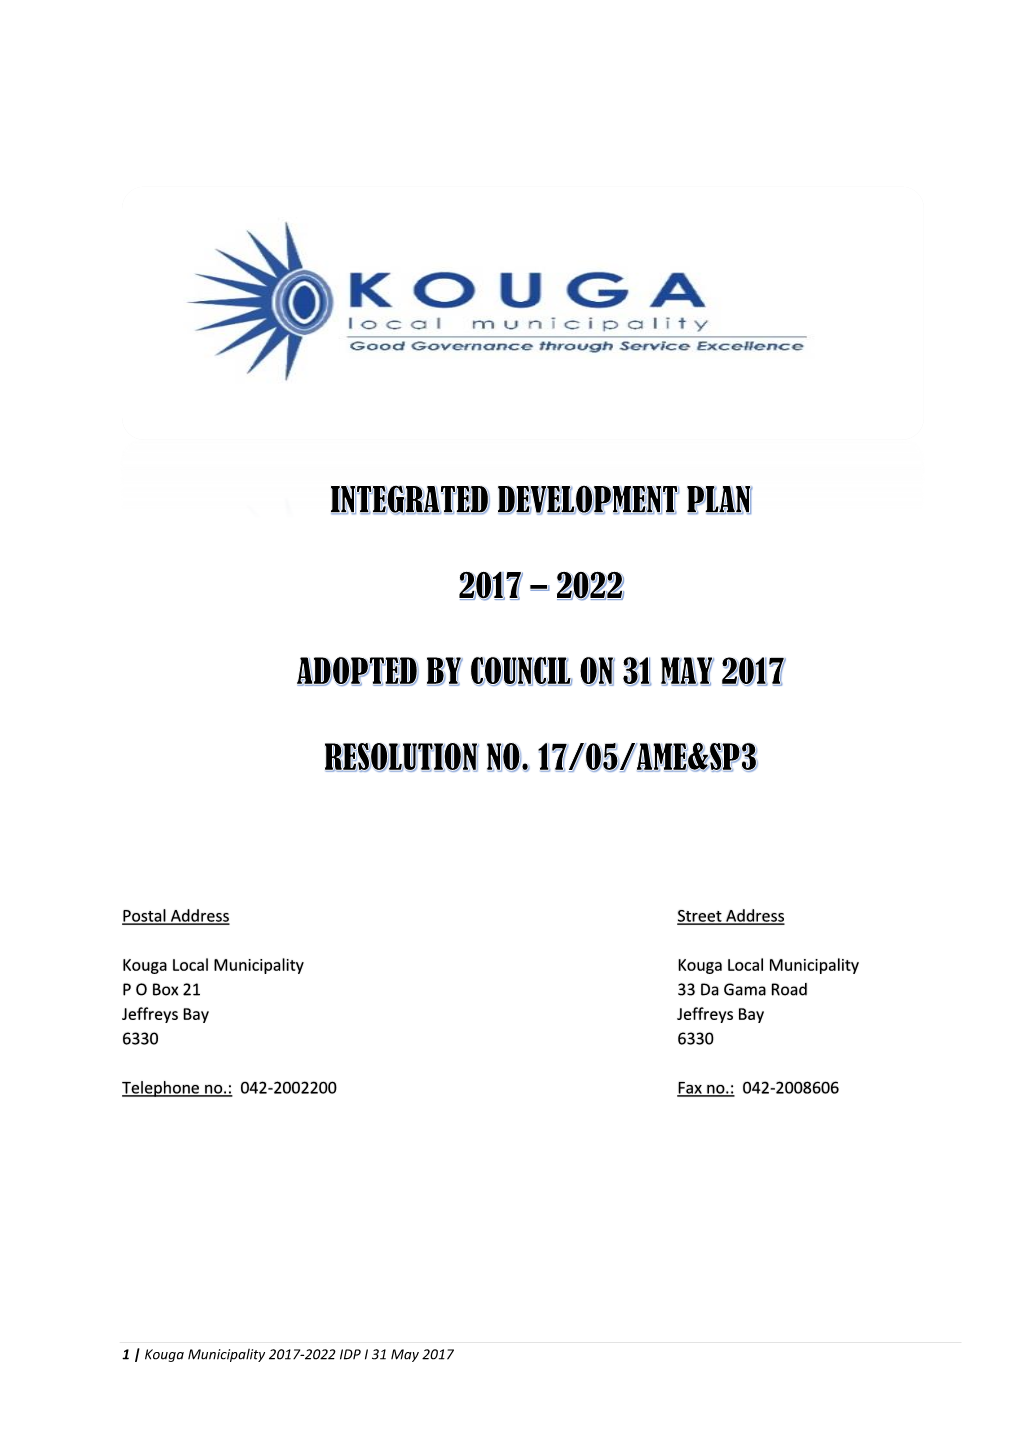 Kouga Municipality 2015/16 IDP Review I 28 May 2015